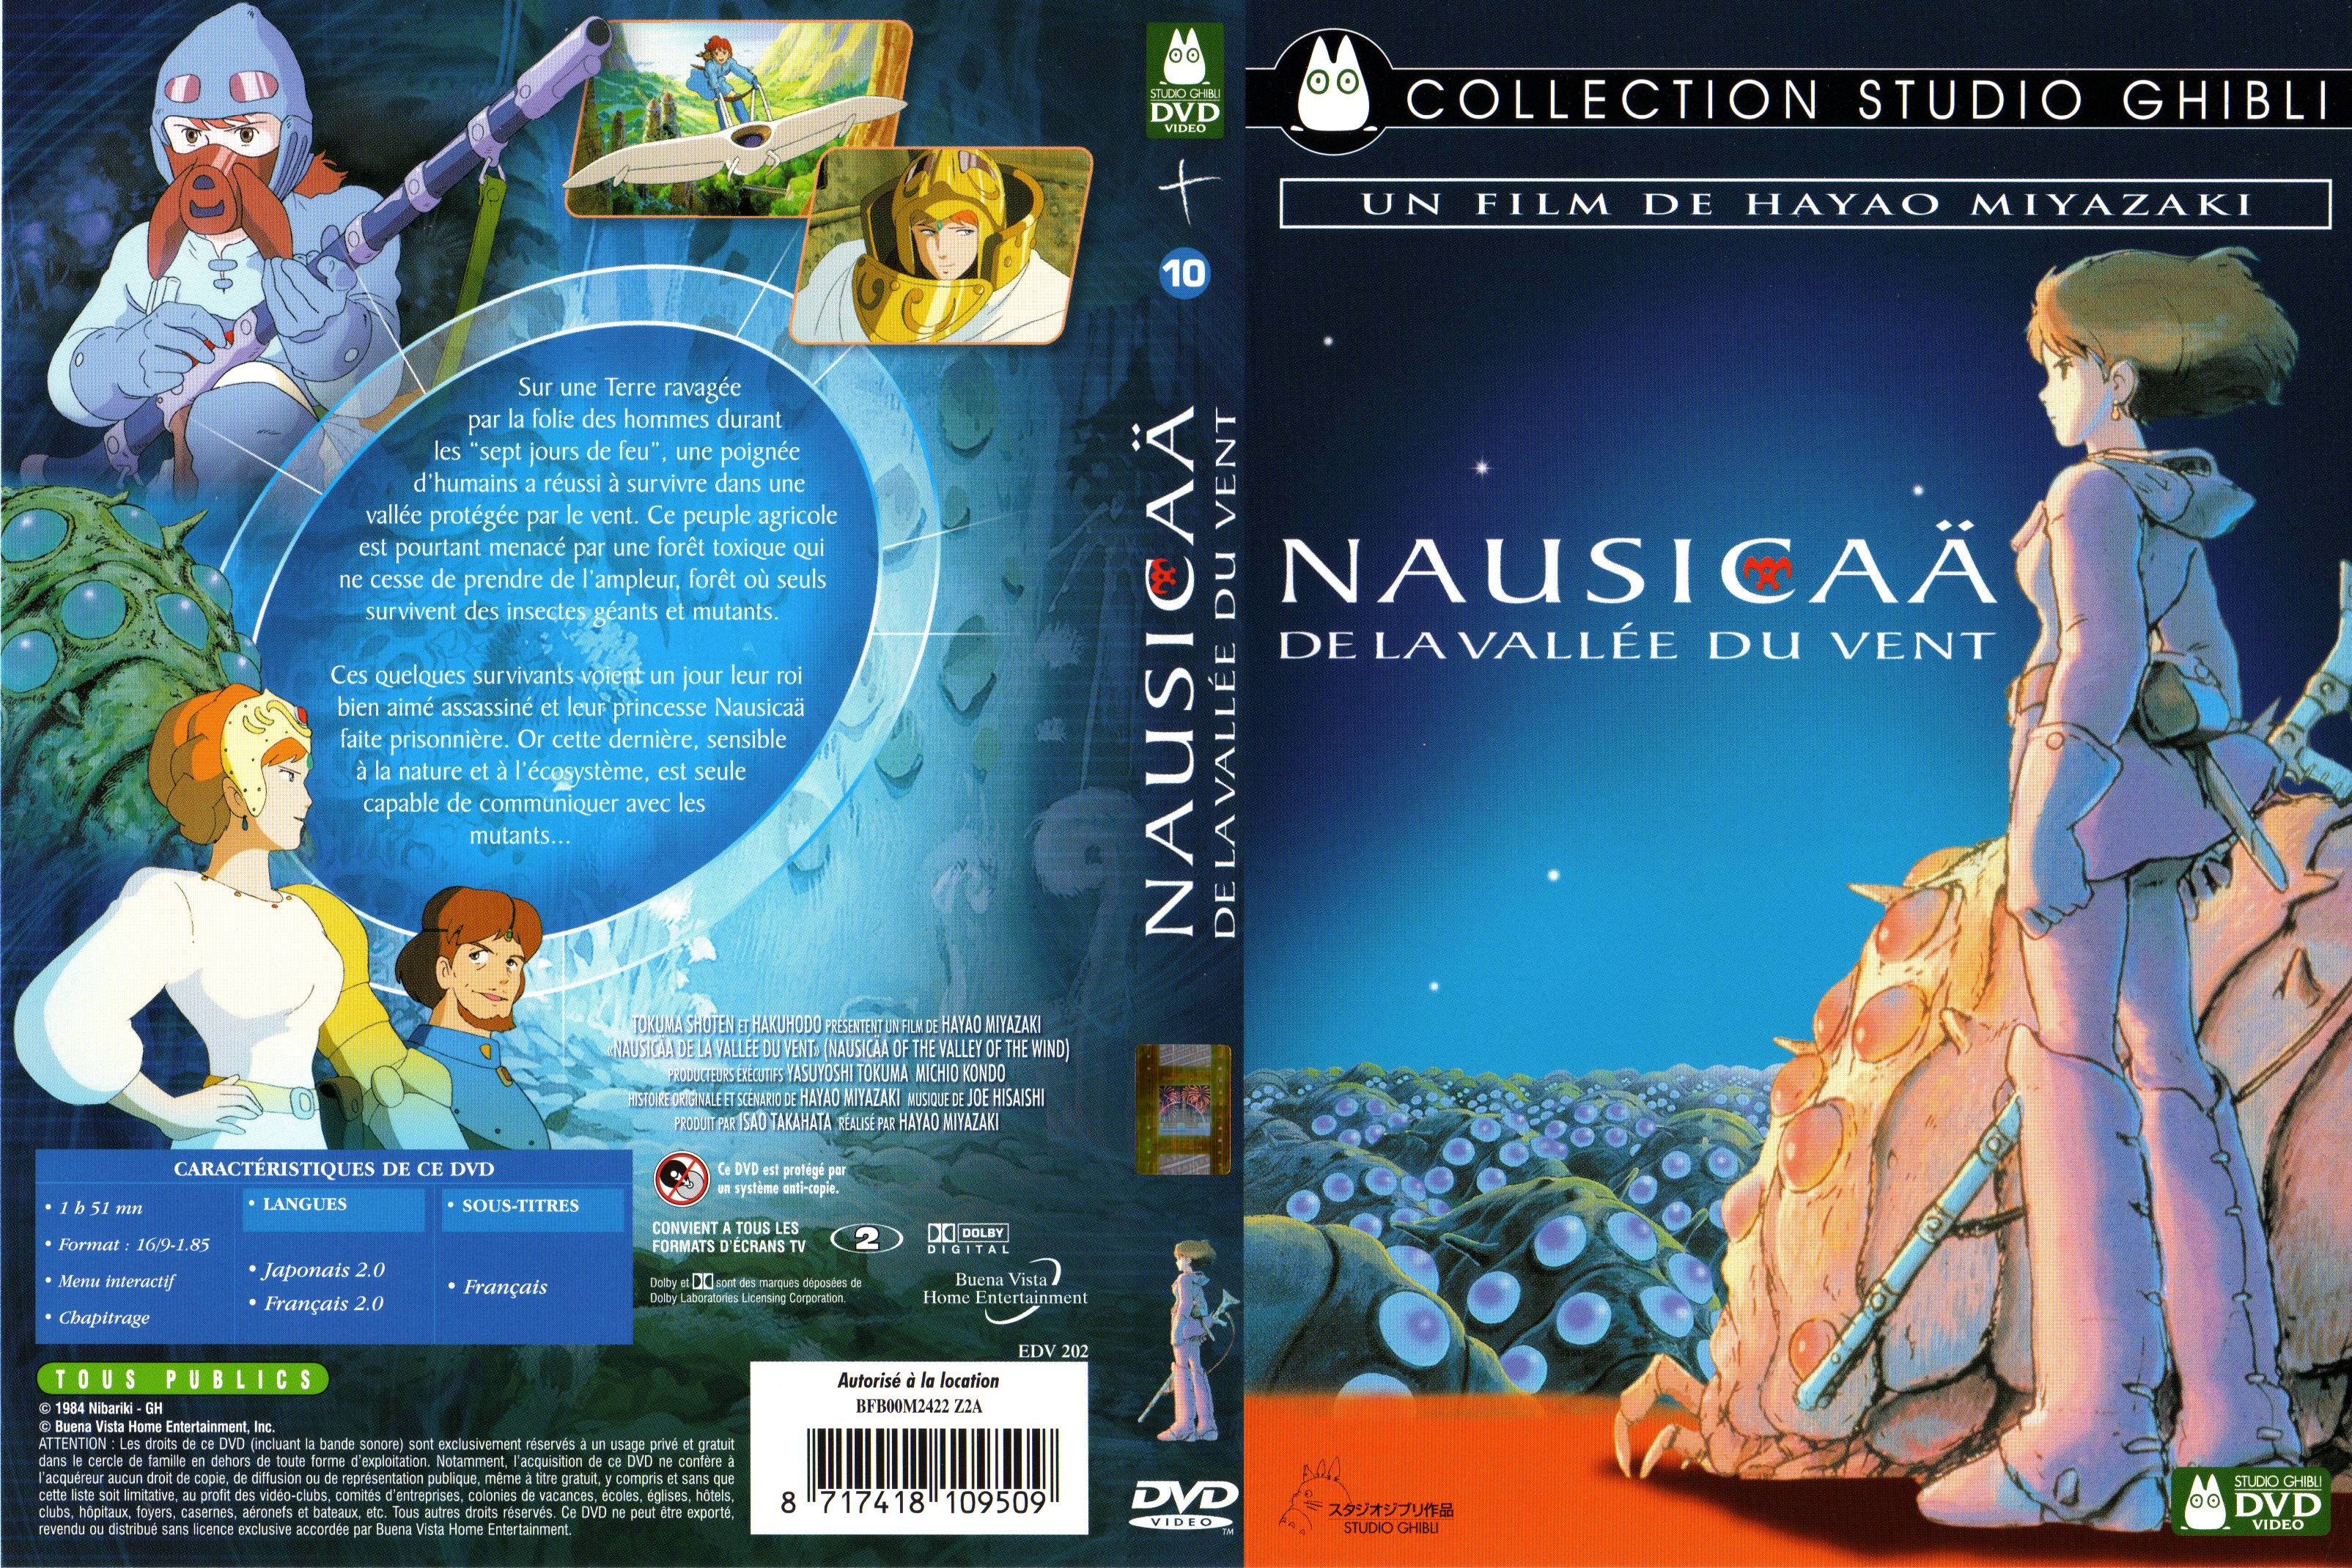 Jaquette DVD Nausicaa de la valle du vent